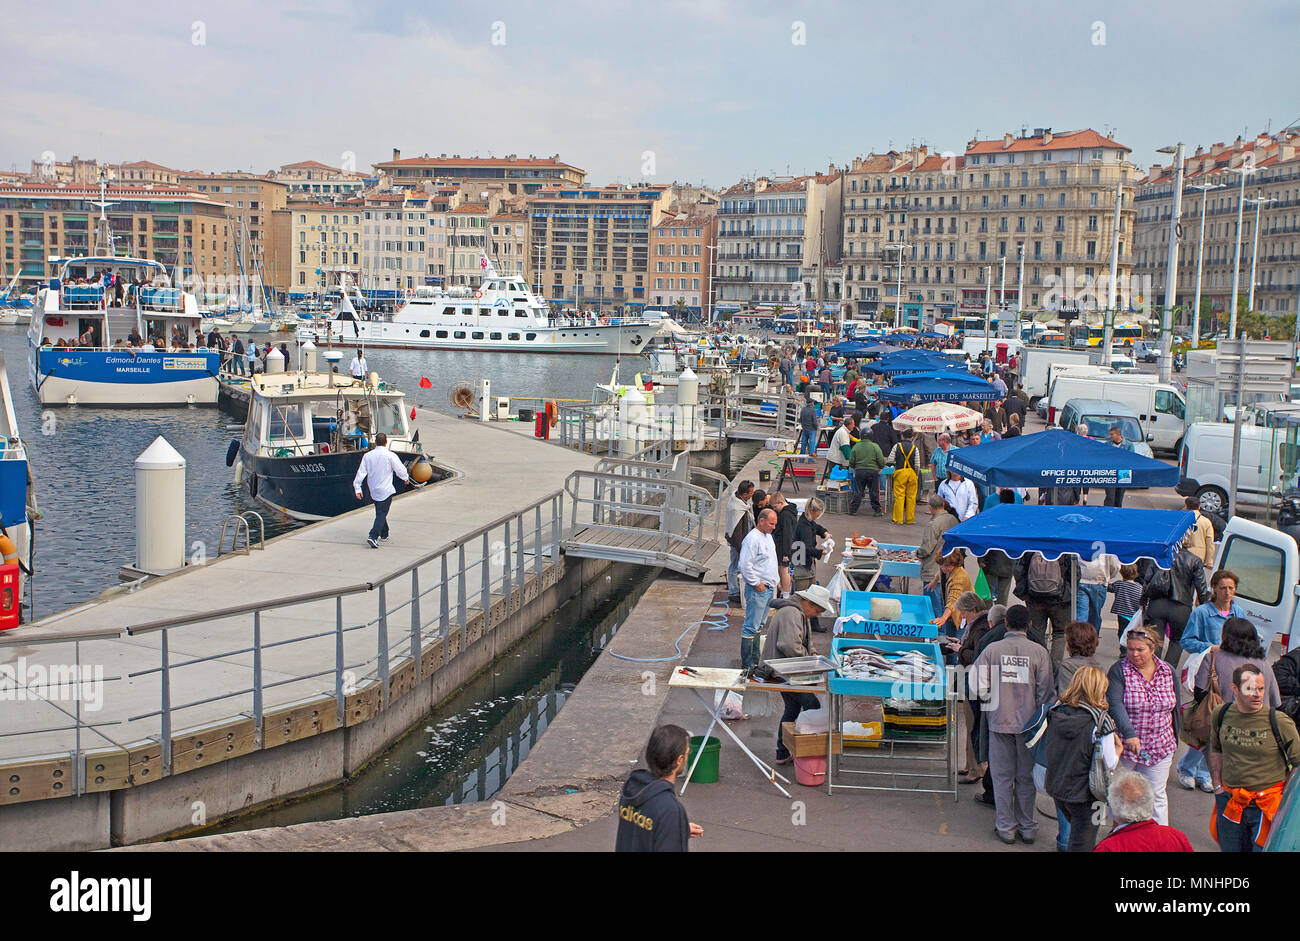 Fischmarkt am alten Hafen Vieux Port, Marseille, Bouches-du-Rhône der Region Provence-Alpes-Côte d'Azur, Südfrankreich, Frankreich, Europa Stockfoto